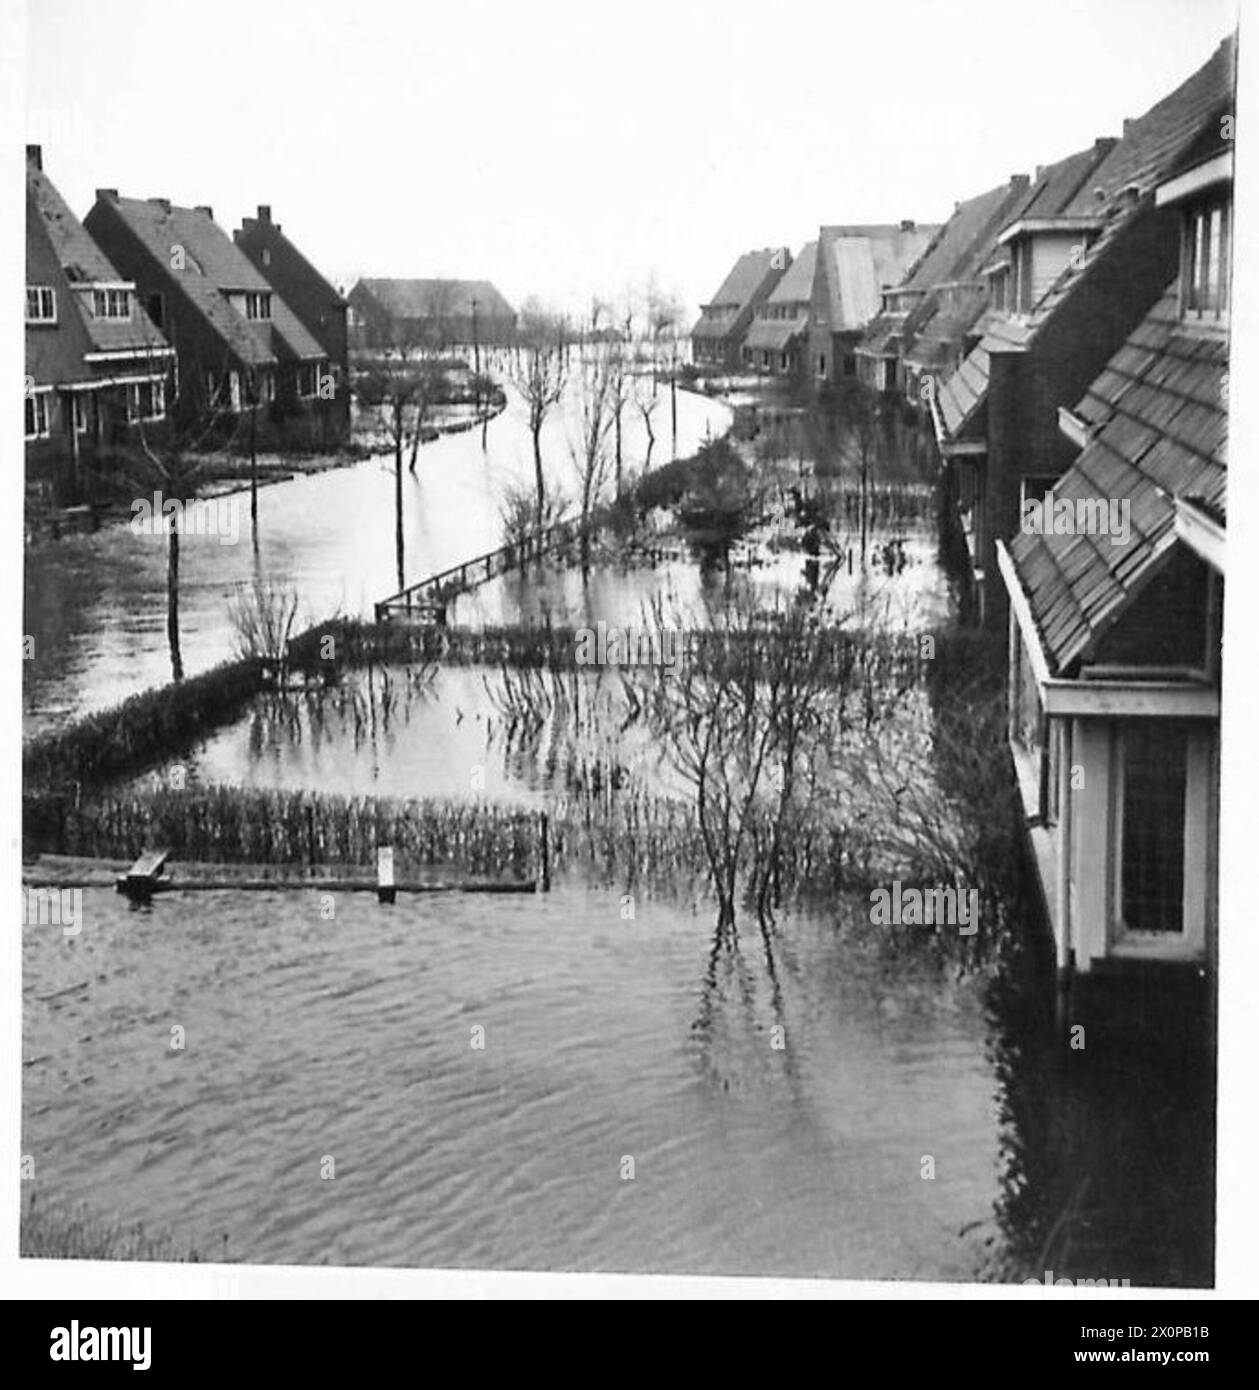 L'ÎLE INONDÉE DE WALCHEREN - vue générale de la zone inondée. Négatif photographique, Armée britannique, 21e groupe d'armées Banque D'Images